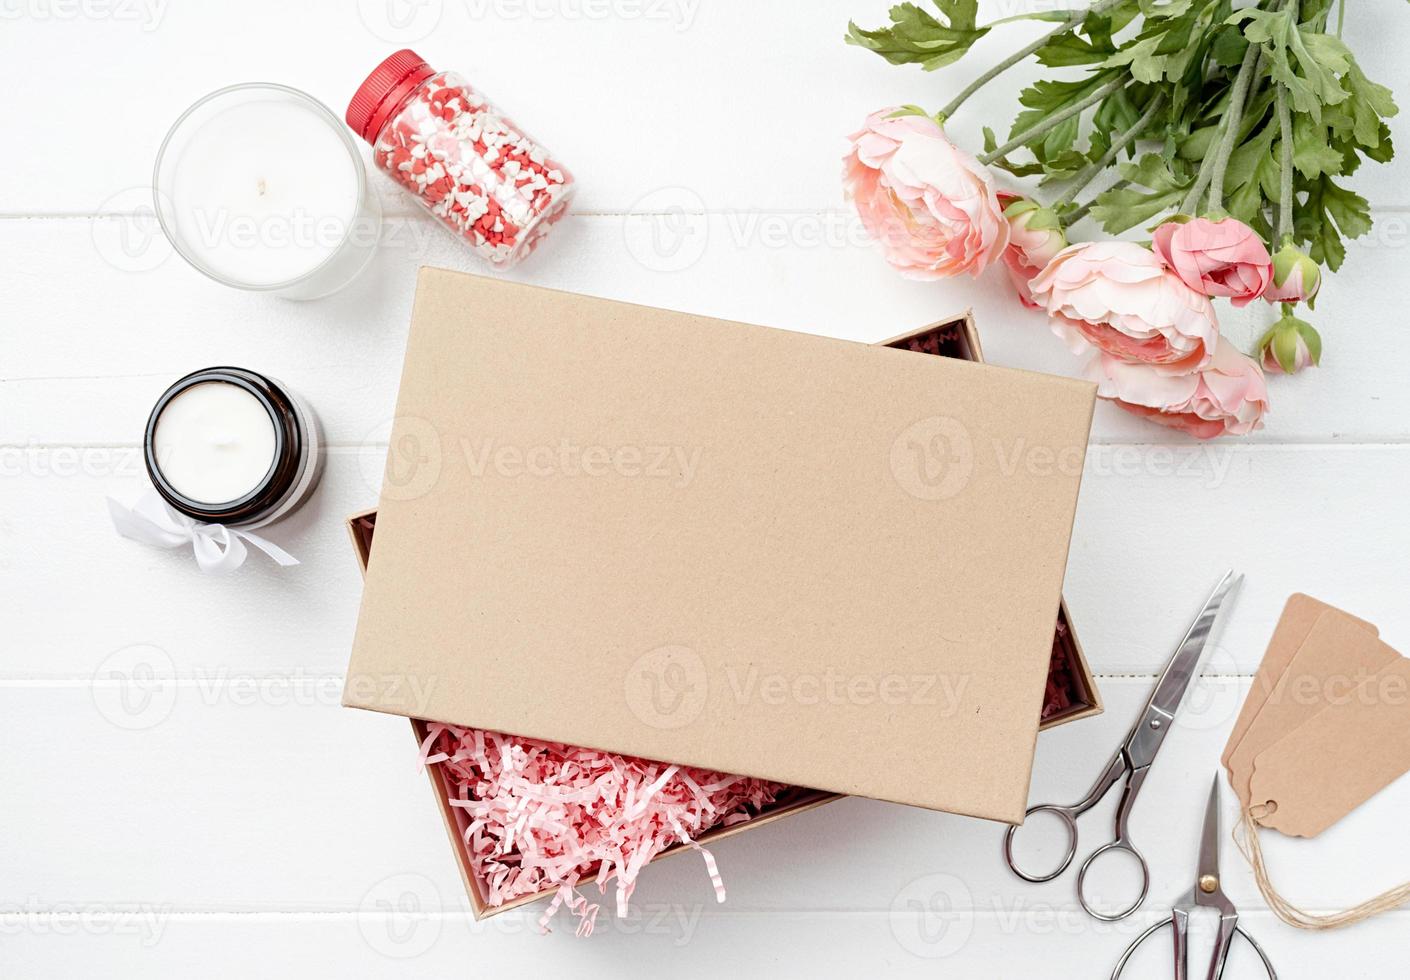 textura de material de embalaje de papel rosa triturado en una caja artesanal, diseño de maqueta foto